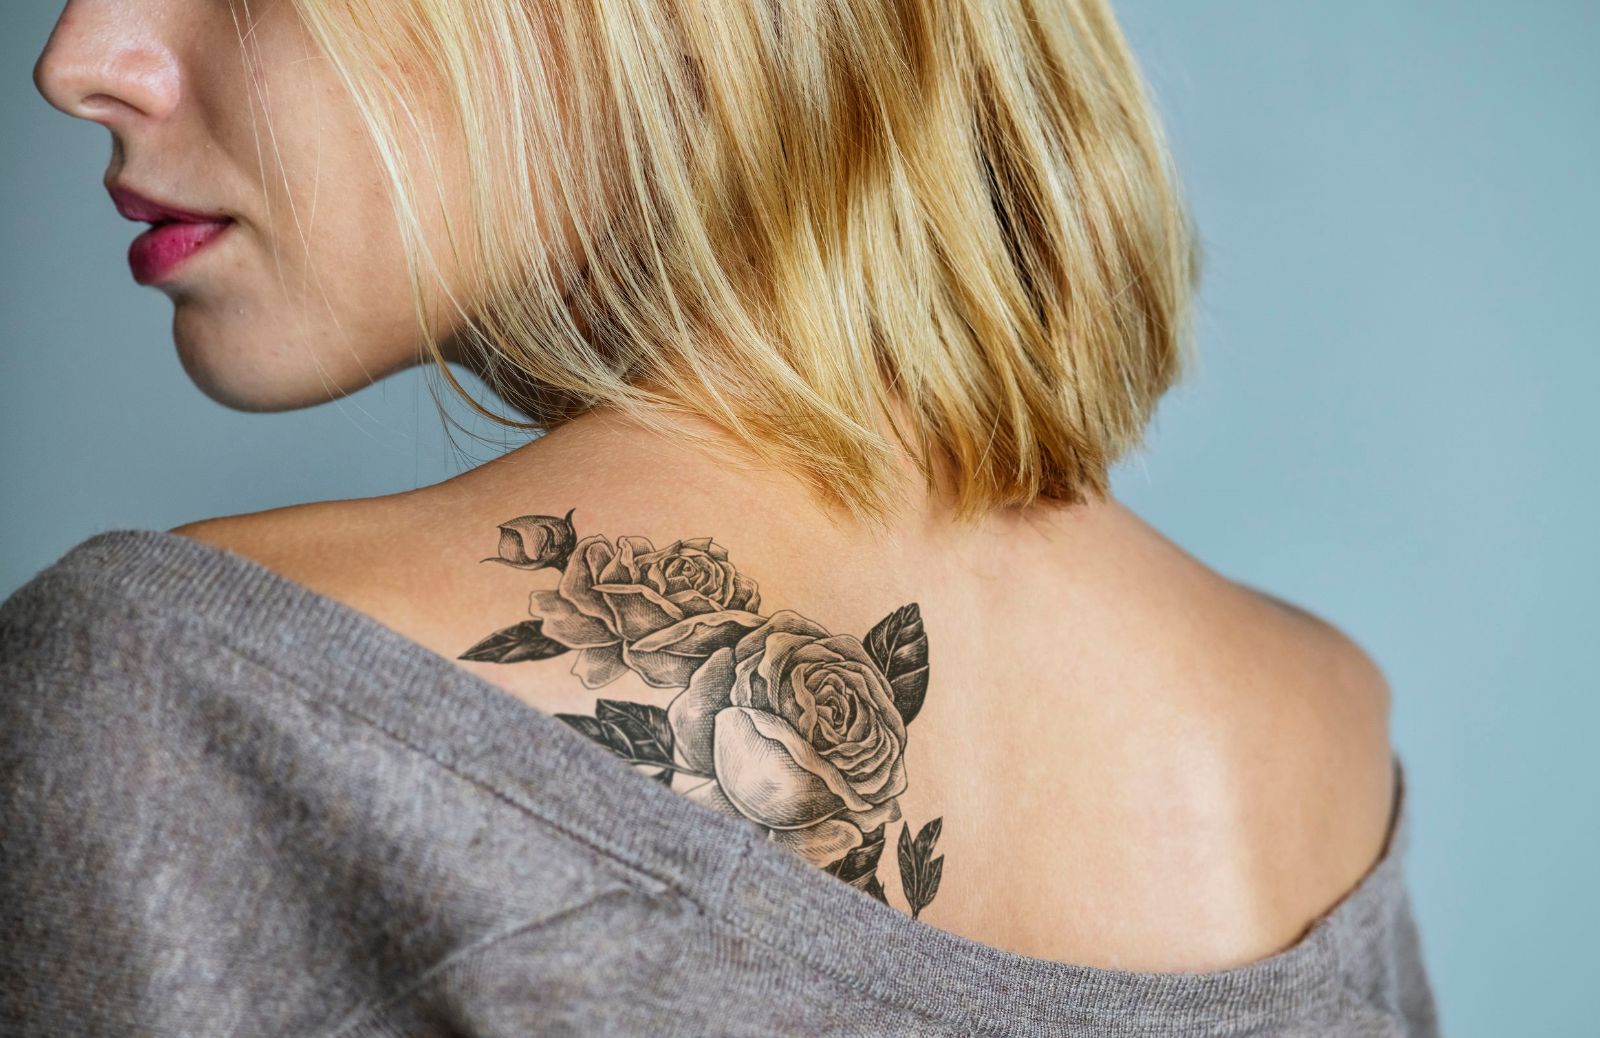 Cosa significa il tattoo rosa?